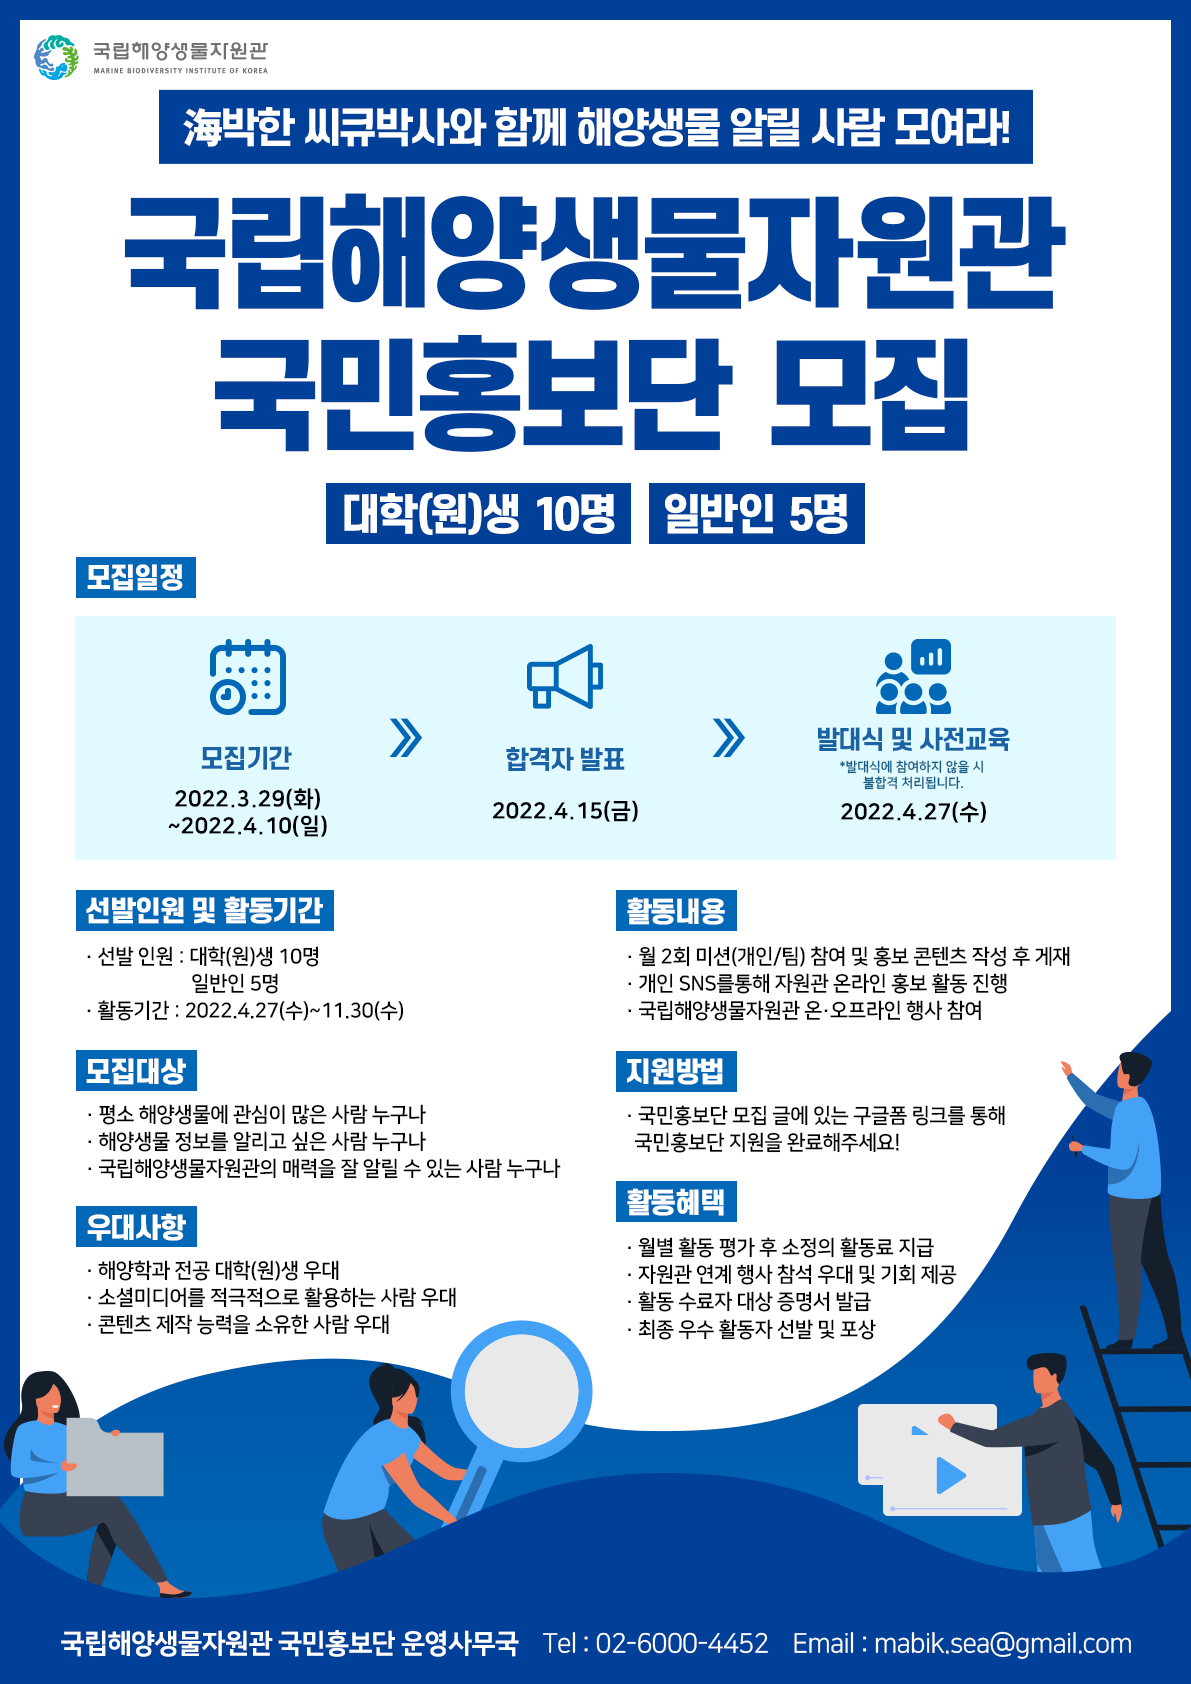 국립해양생물자원관 국민홍보단 모집